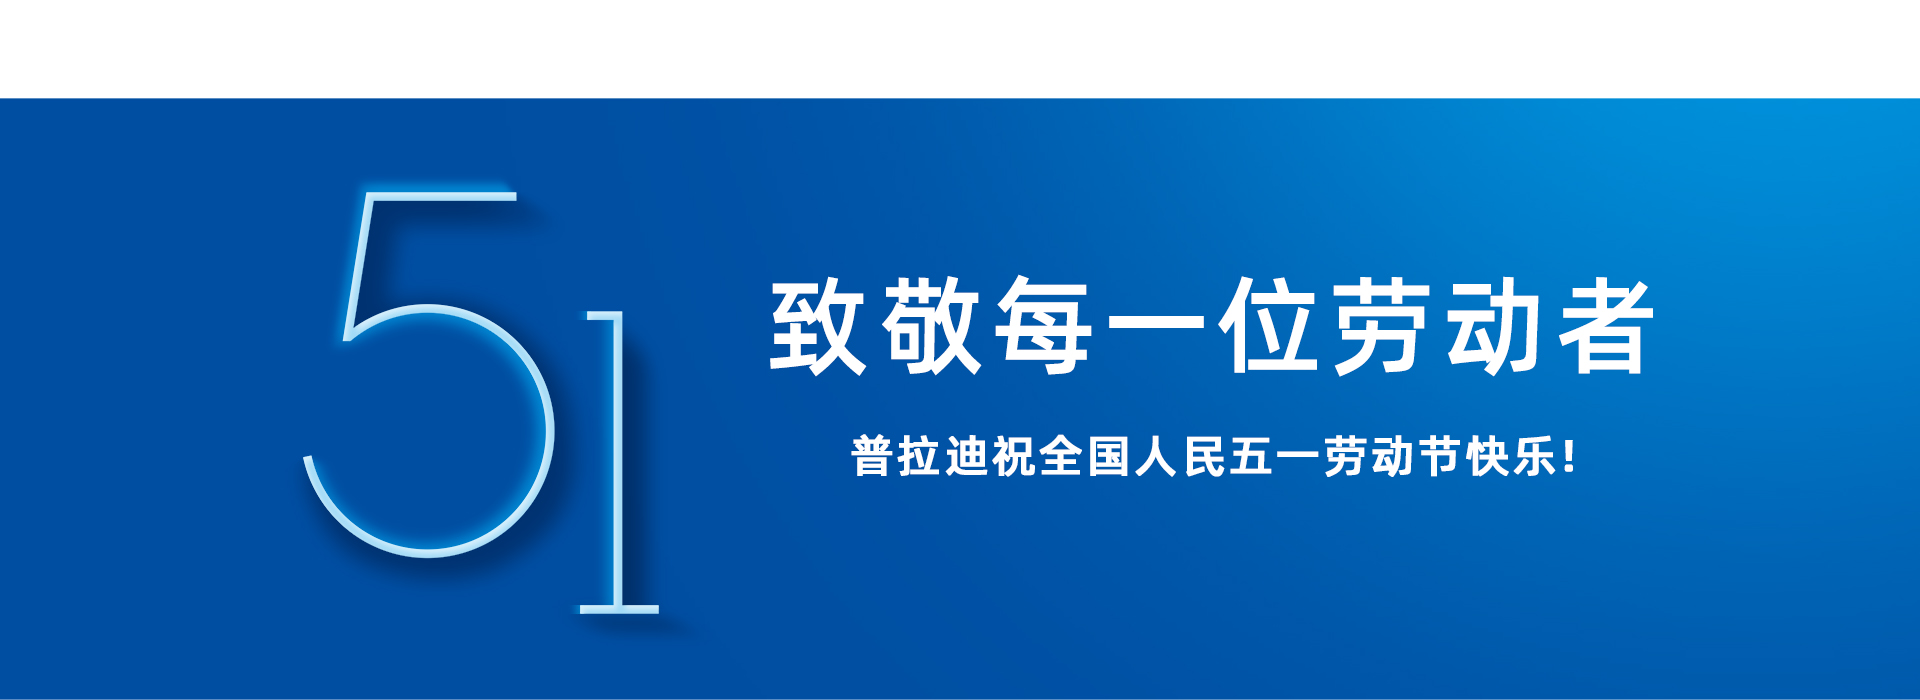 betway必威(中国)官方网站加工中心首页幻灯片